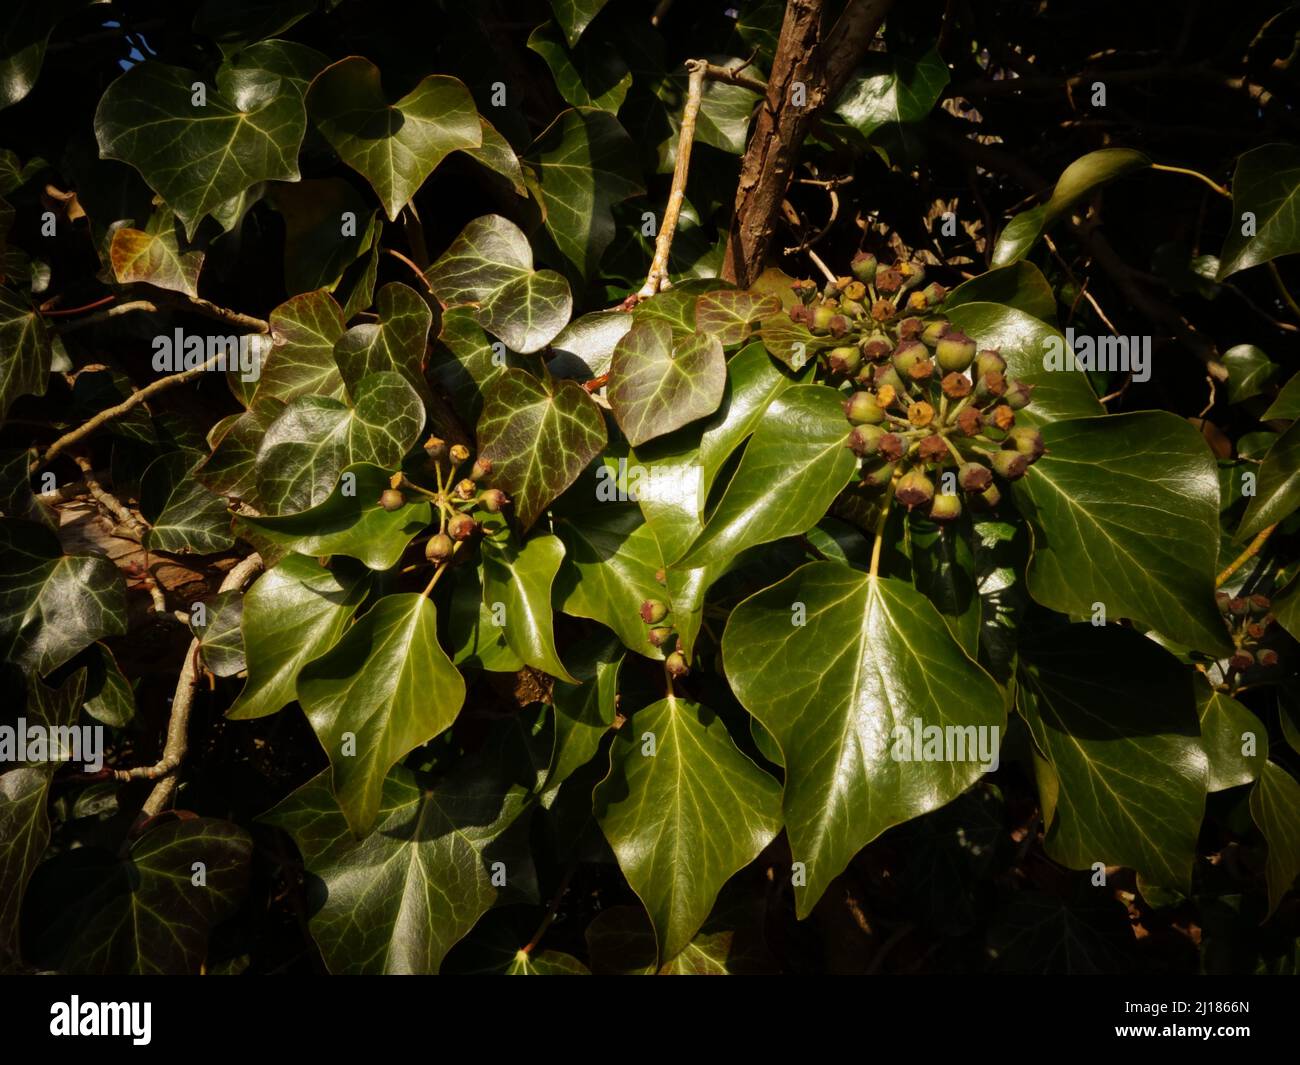 Garten Efeu mit Trauben von unreifen Beeren und schönen grünen Blättern, eine dekorative Kletterpflanze, immergrün, aber eine giftige und giftige Gartenpflanze. Stockfoto